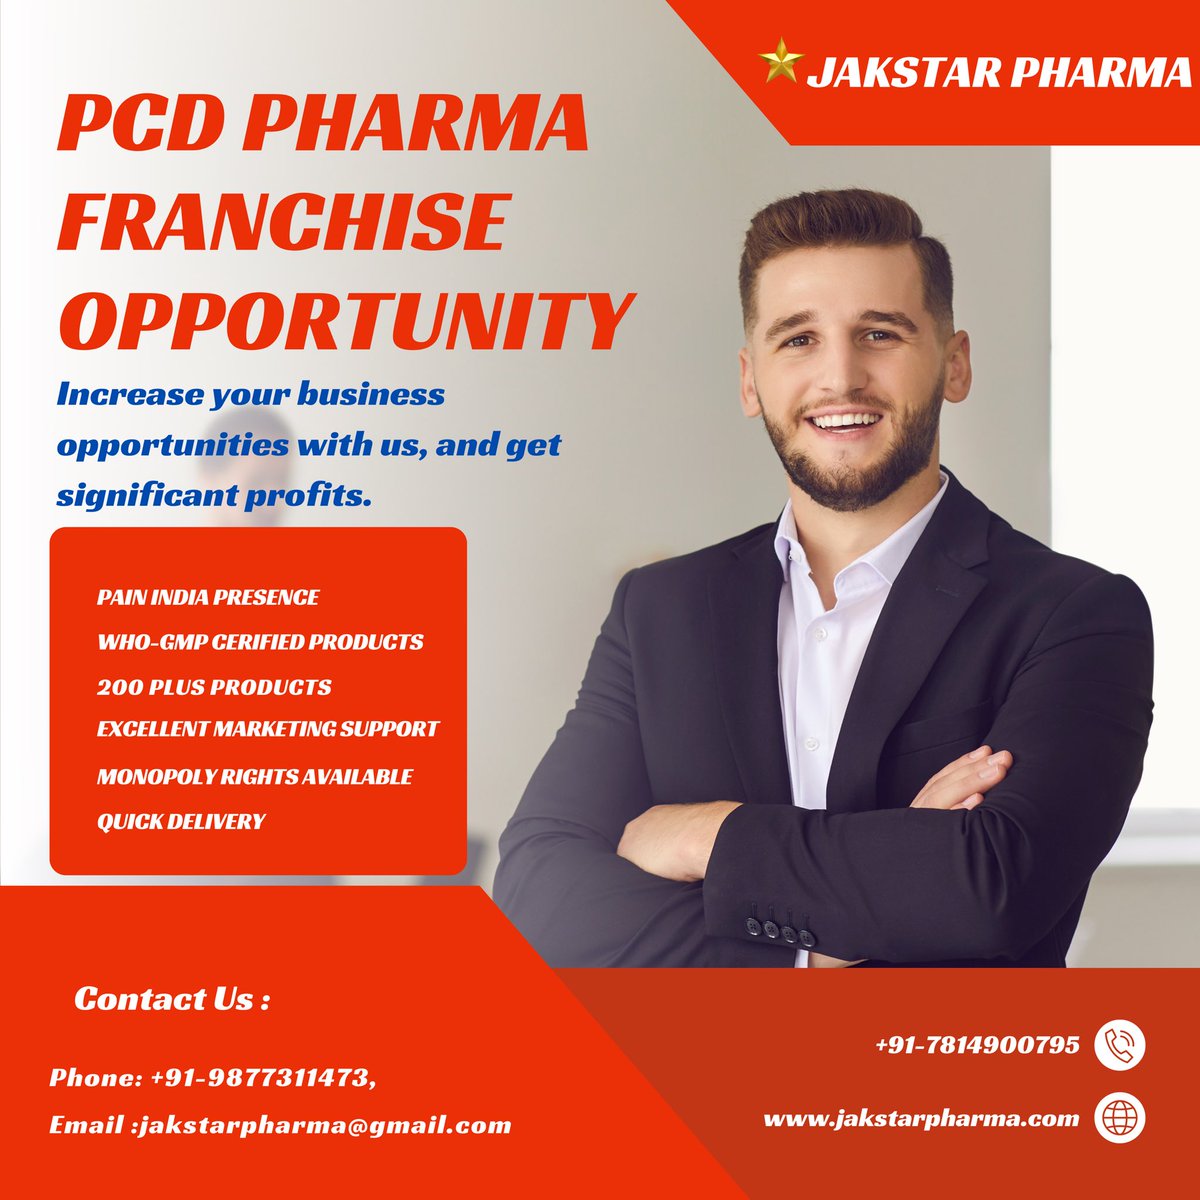 #franchise #franchisee #pcd #pcdpharma #marketing #pharmaceutical #pharmacy #pharmamarketing